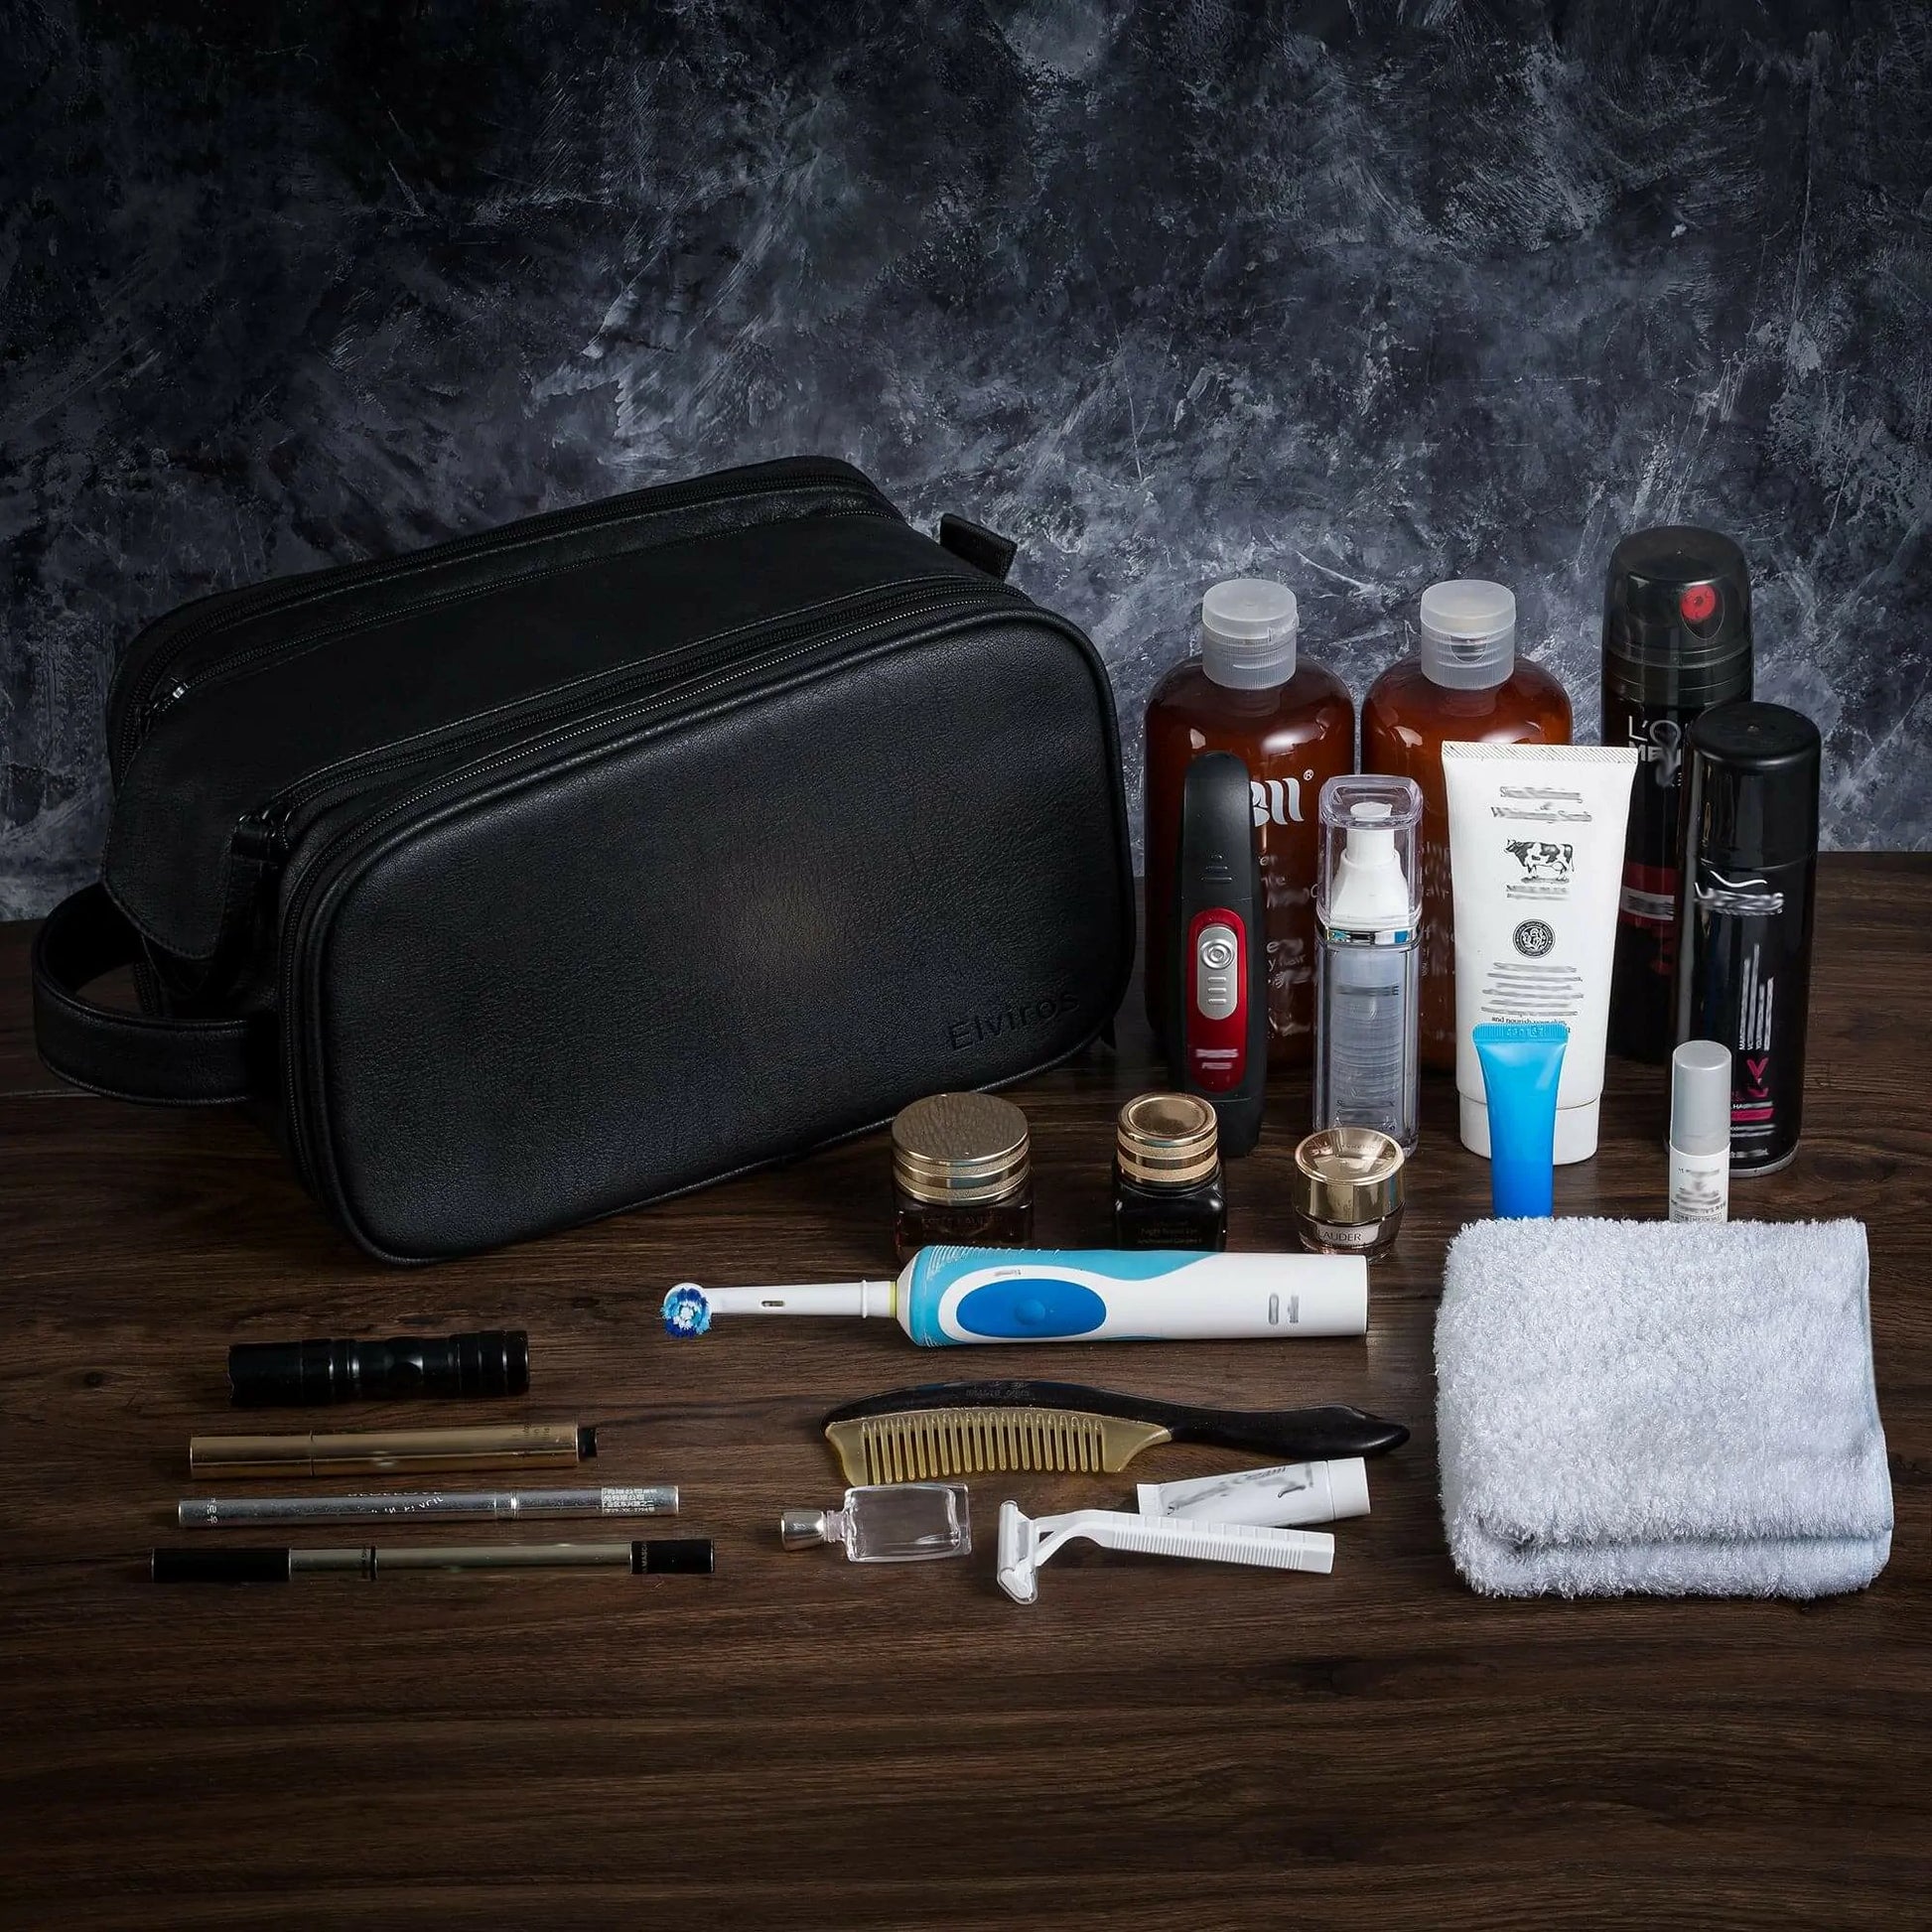 Elviros Toiletry Bag for Men, Large Travel Shaving Dopp Kit Water